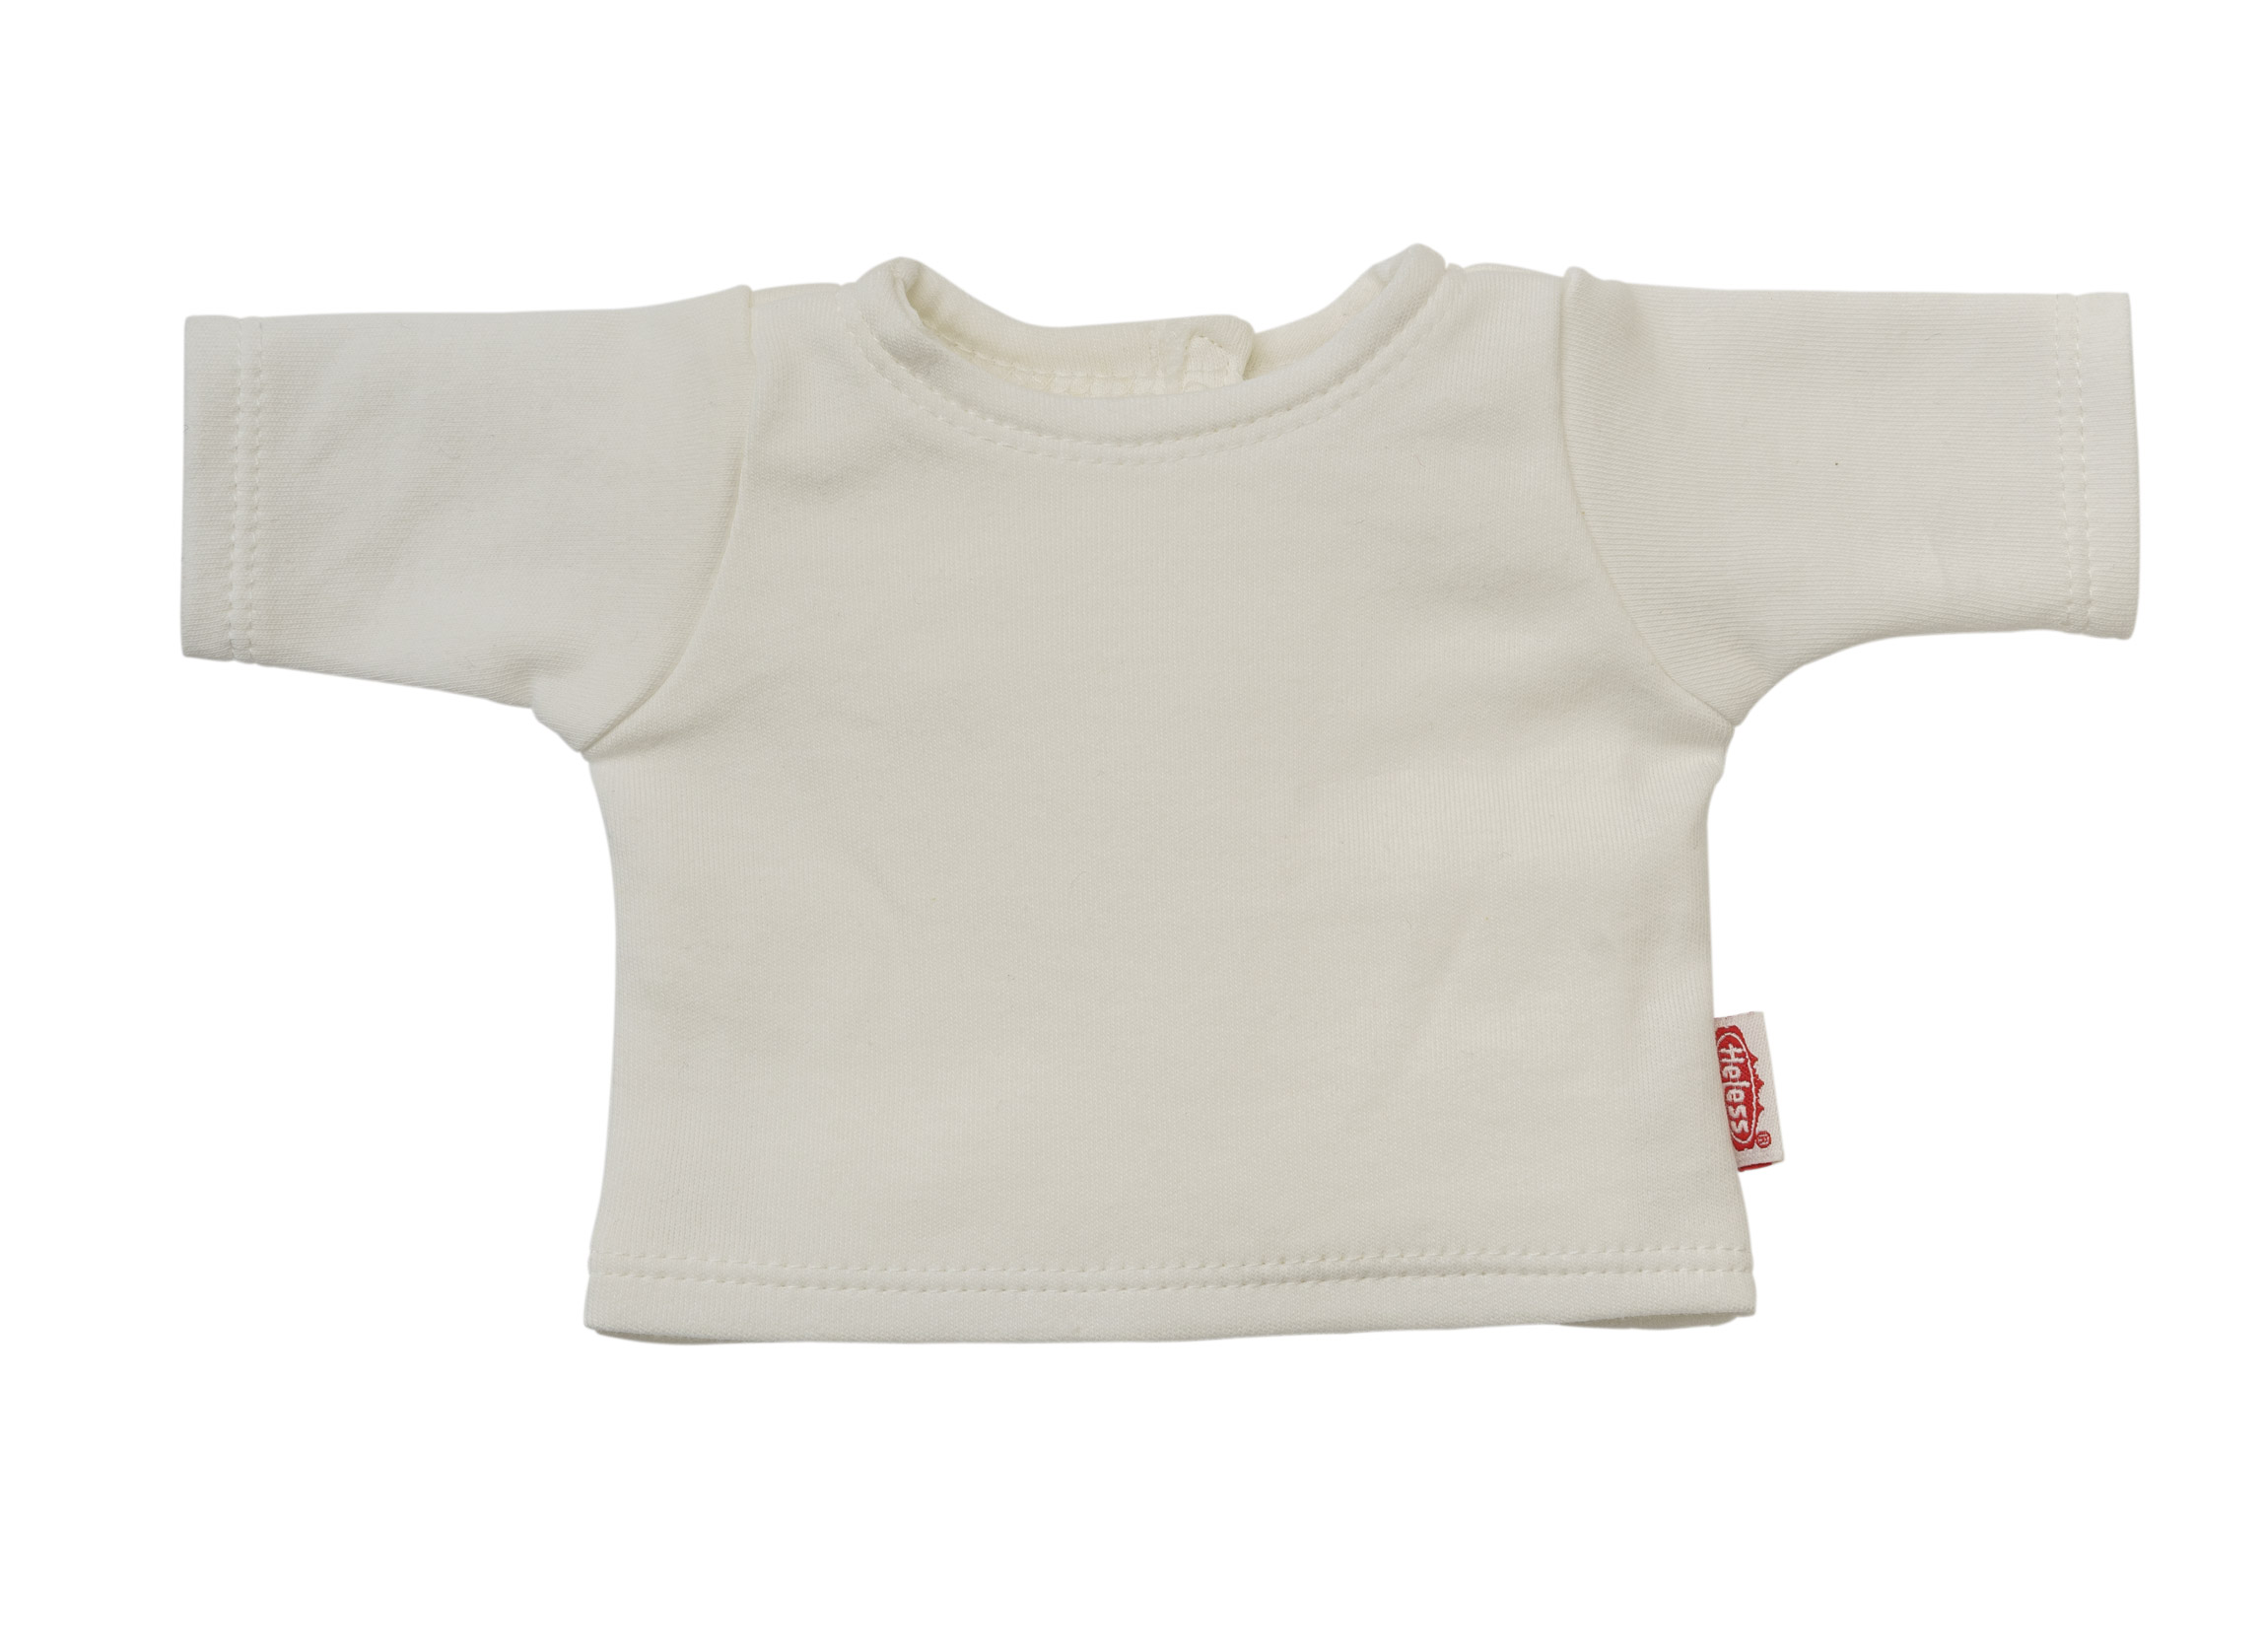 Puppen-Latzhose aus 100 % Bio-Baumwolle, salbeigrün, mit weißem T-Shirt, 2-teilig, Gr. 28-35 cm